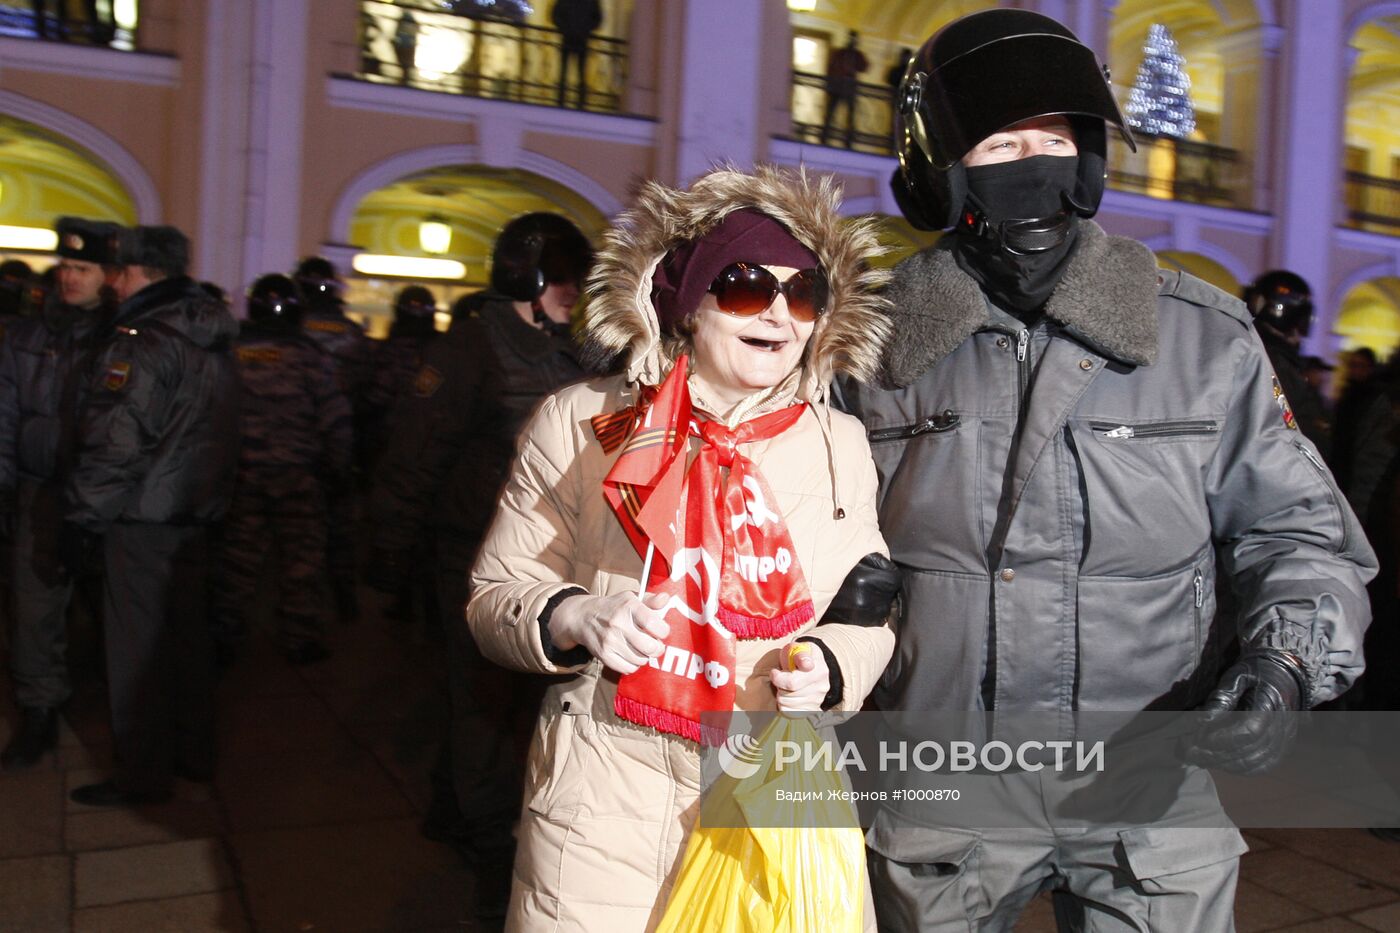 Акция протеста у станции метро "Гостиный Двор" в Петербурге